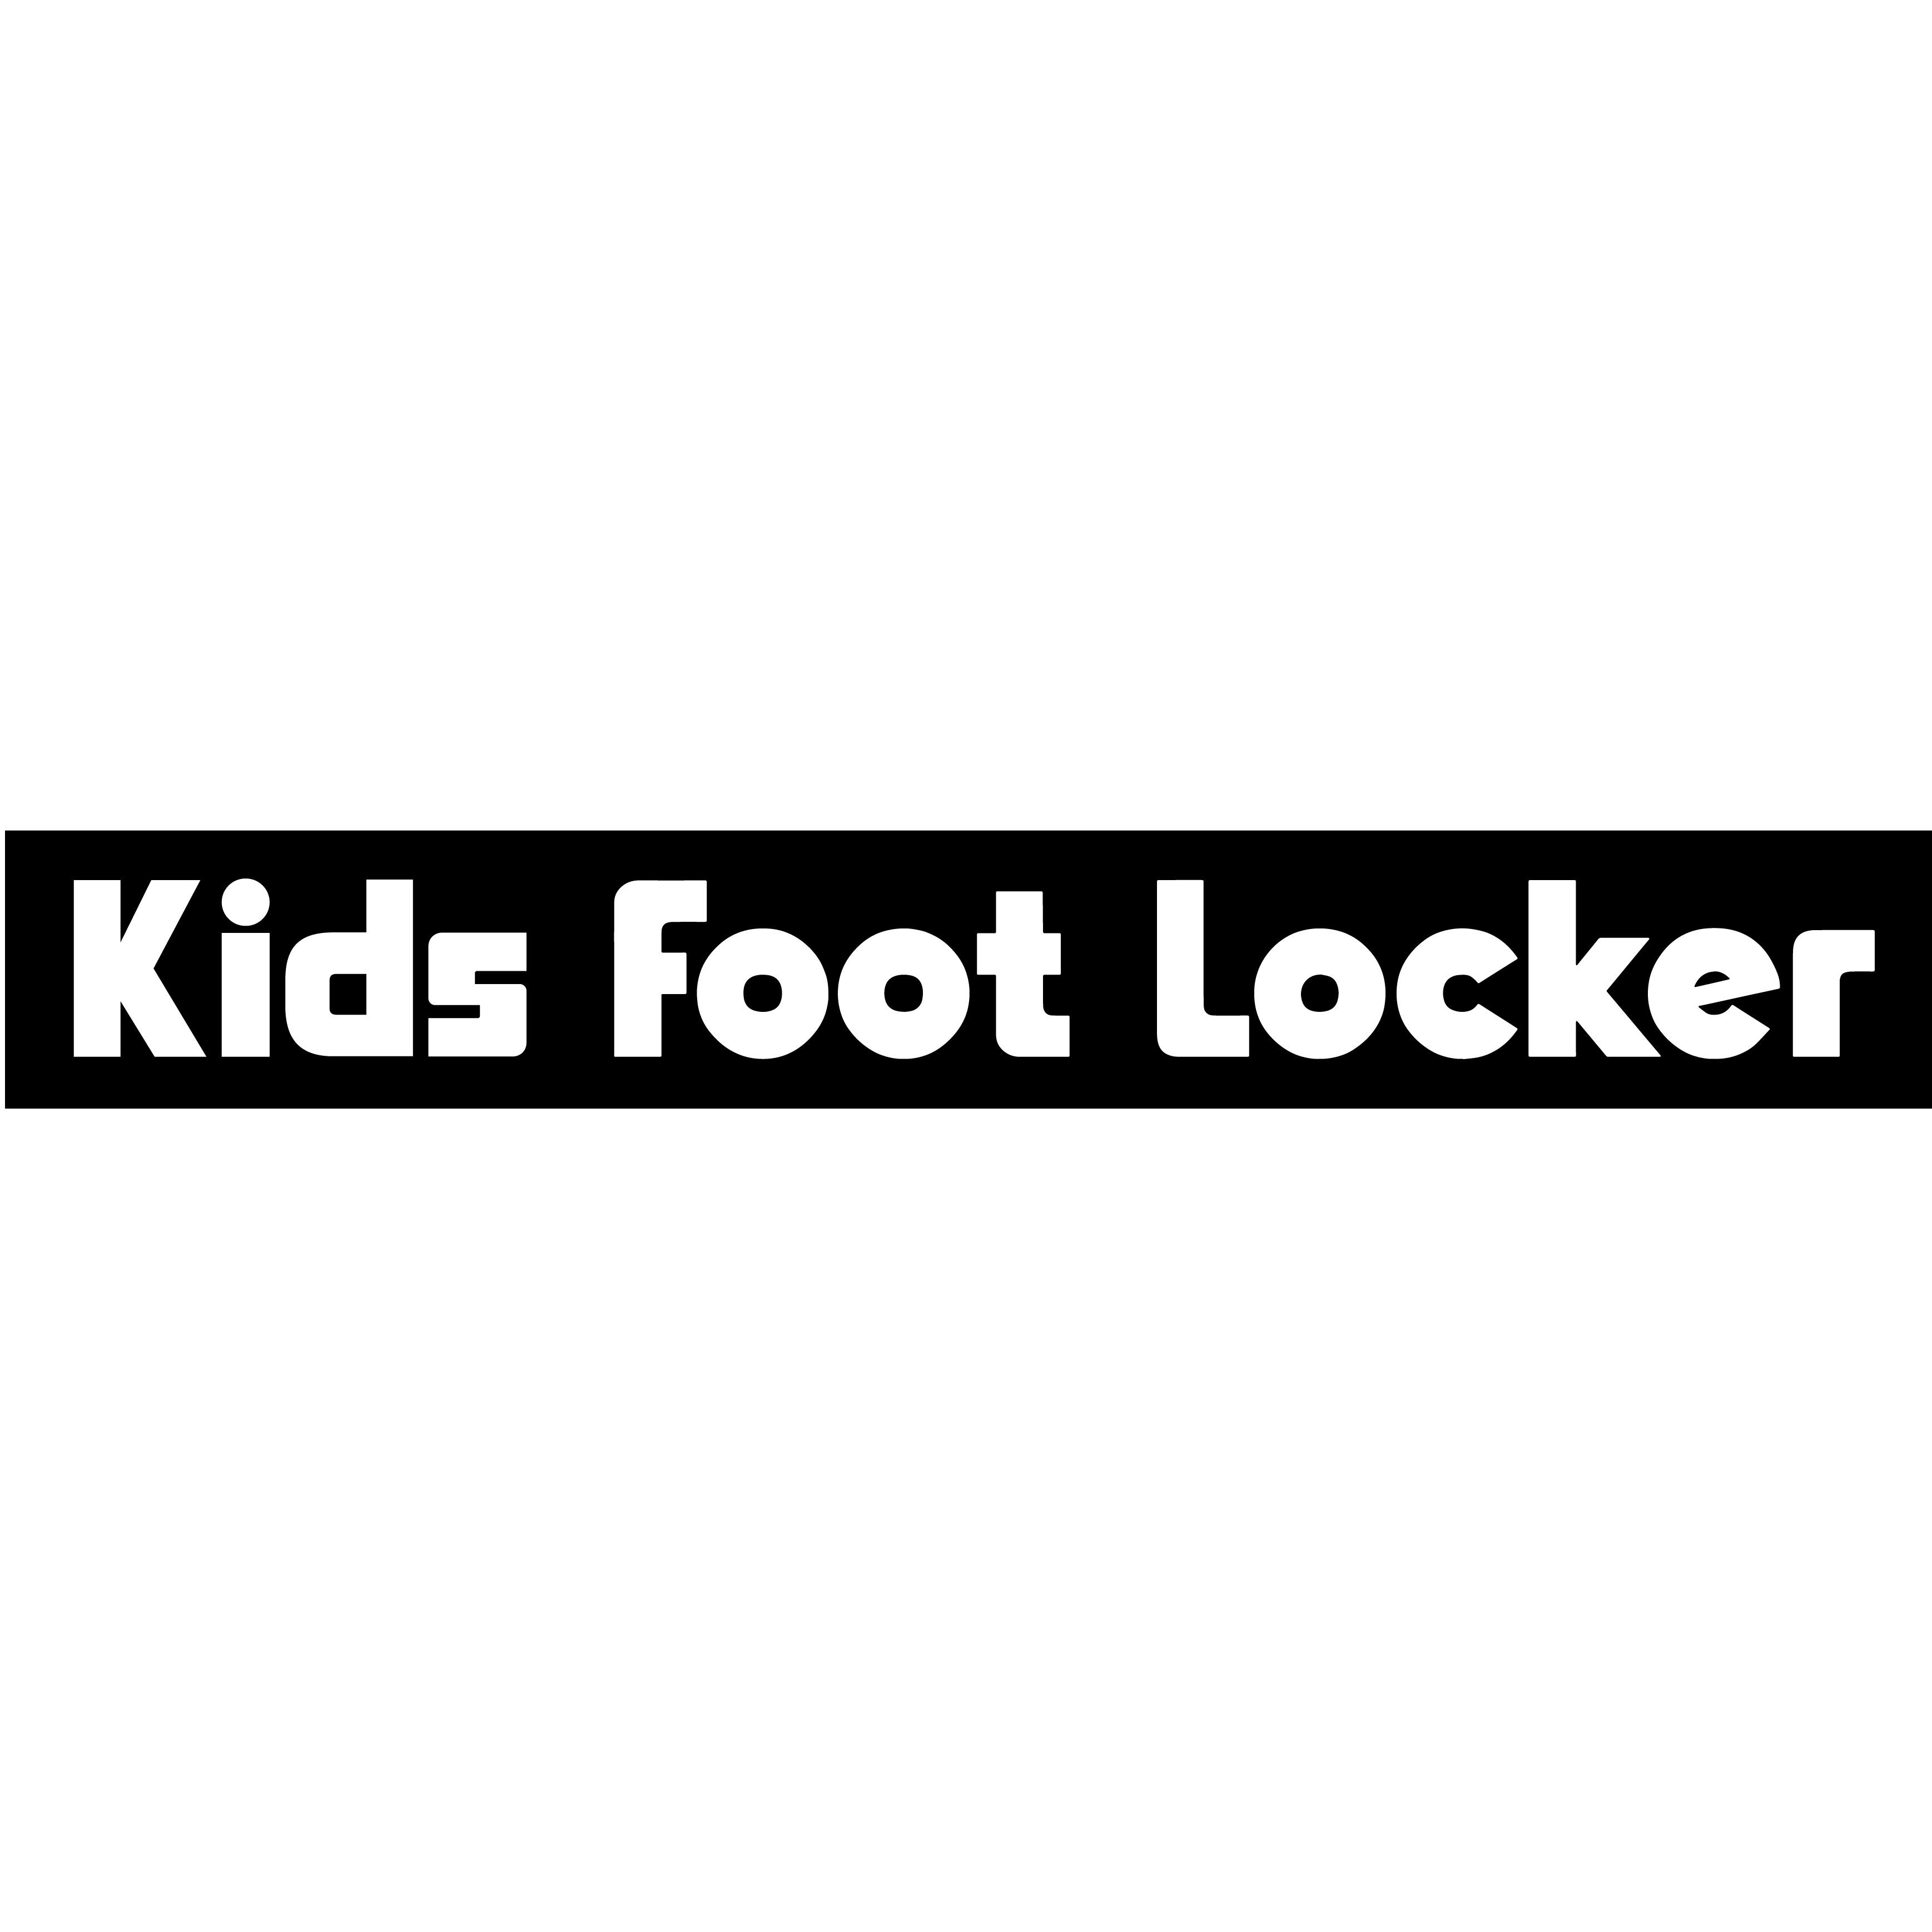 Kids Foot Locker Cumberland Mall: in 